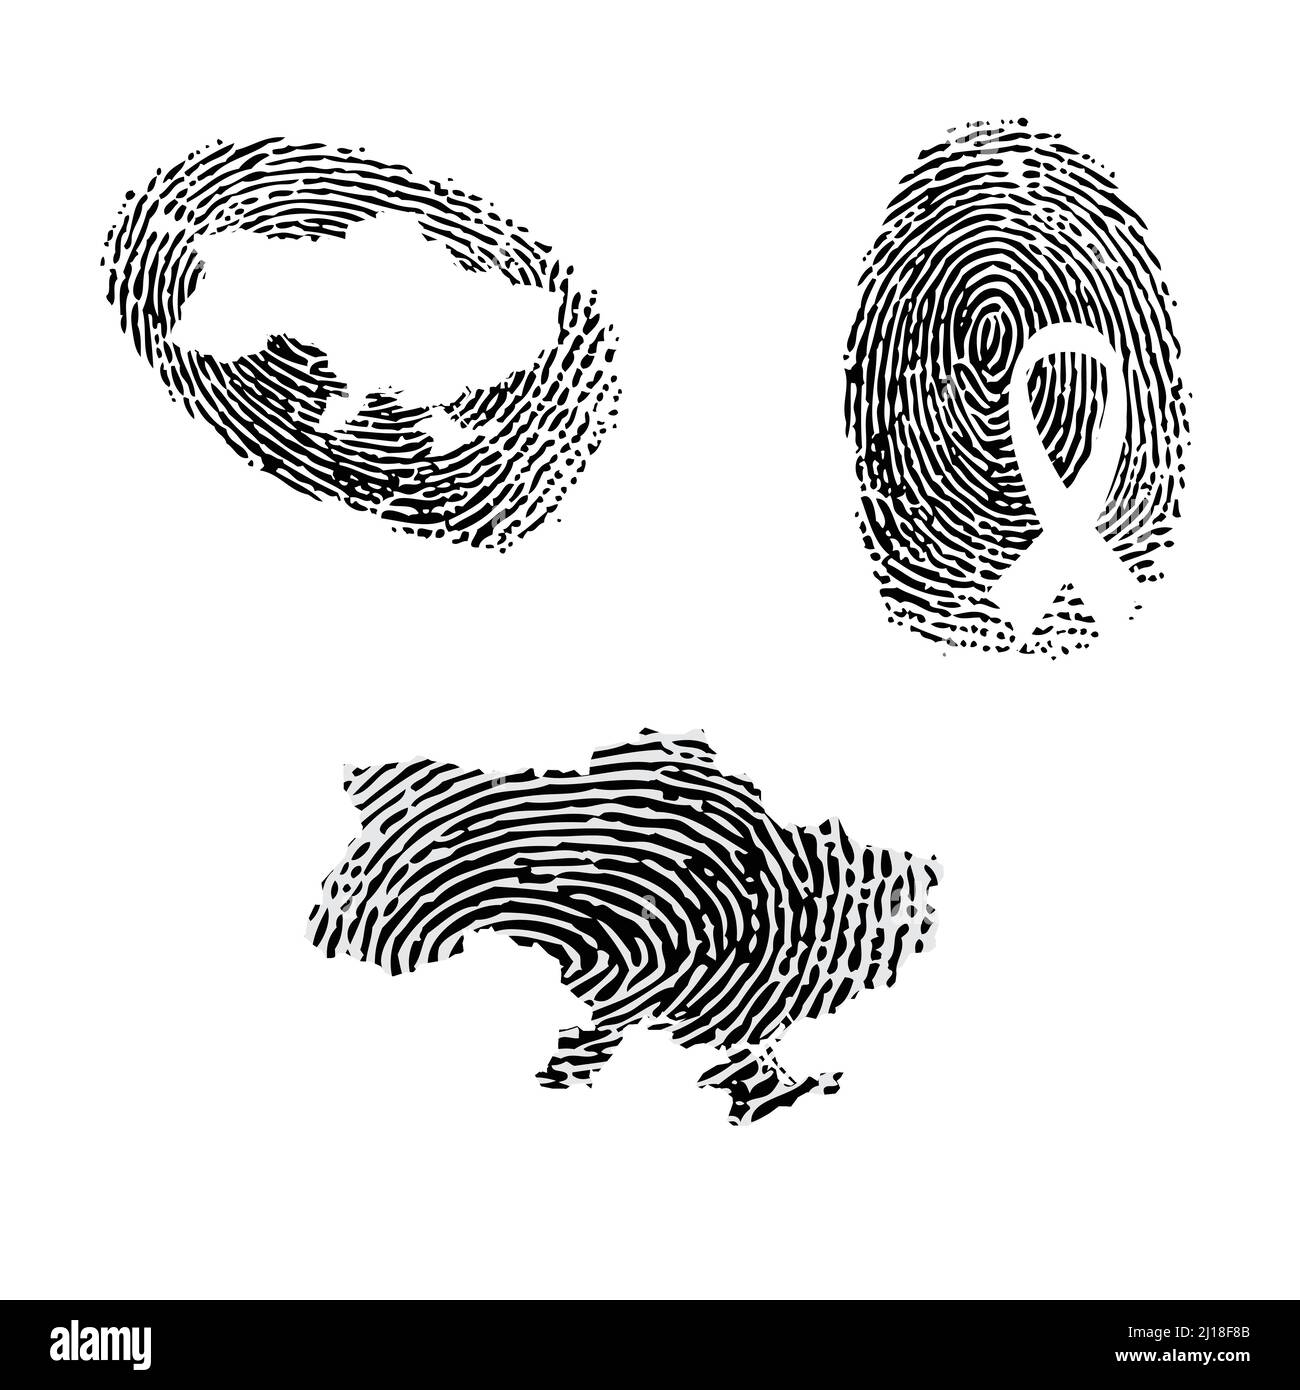 Fingerprint with Ukraine map silhouette Stock Vector